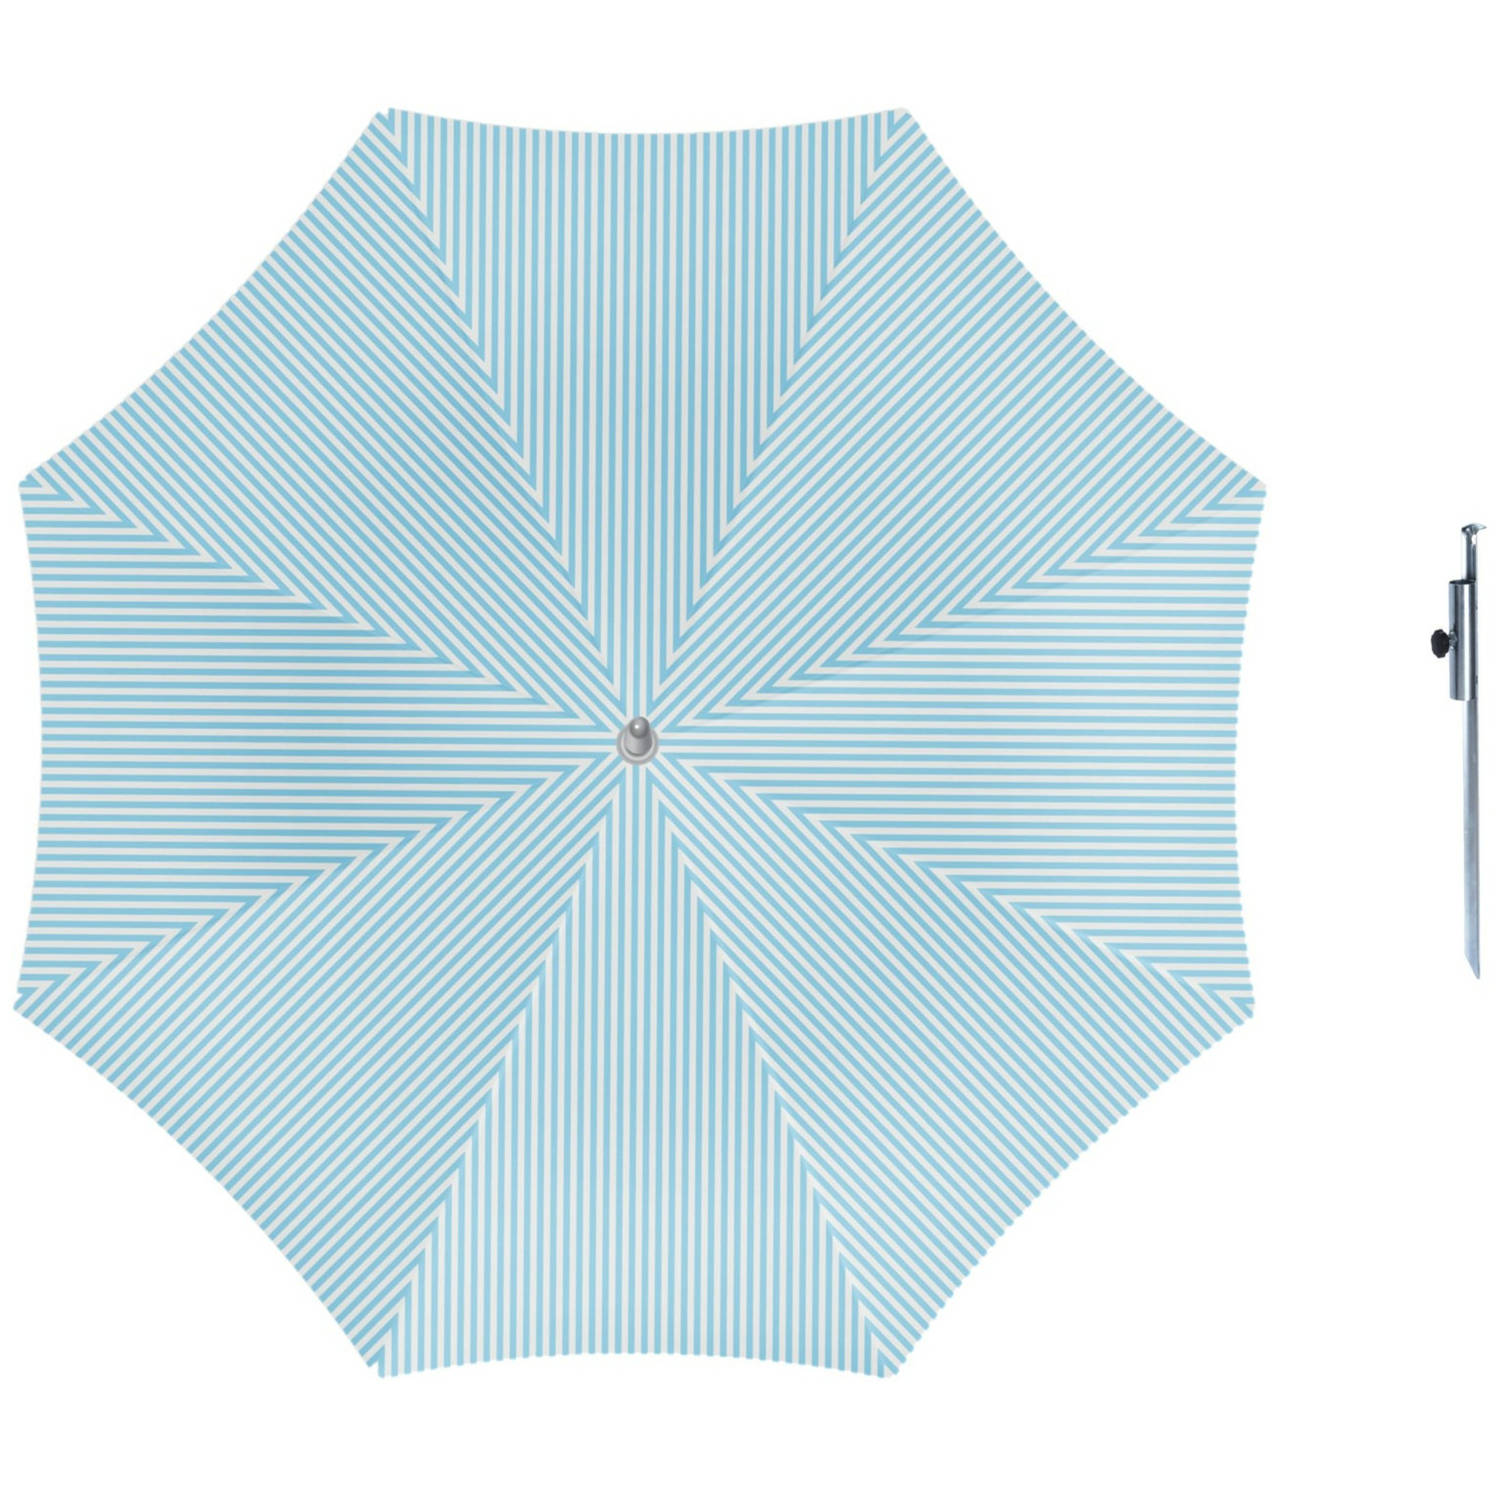 Parasol Lichtblauw-wit D160 cm incl. draagtas parasolharing 49 cm Parasols